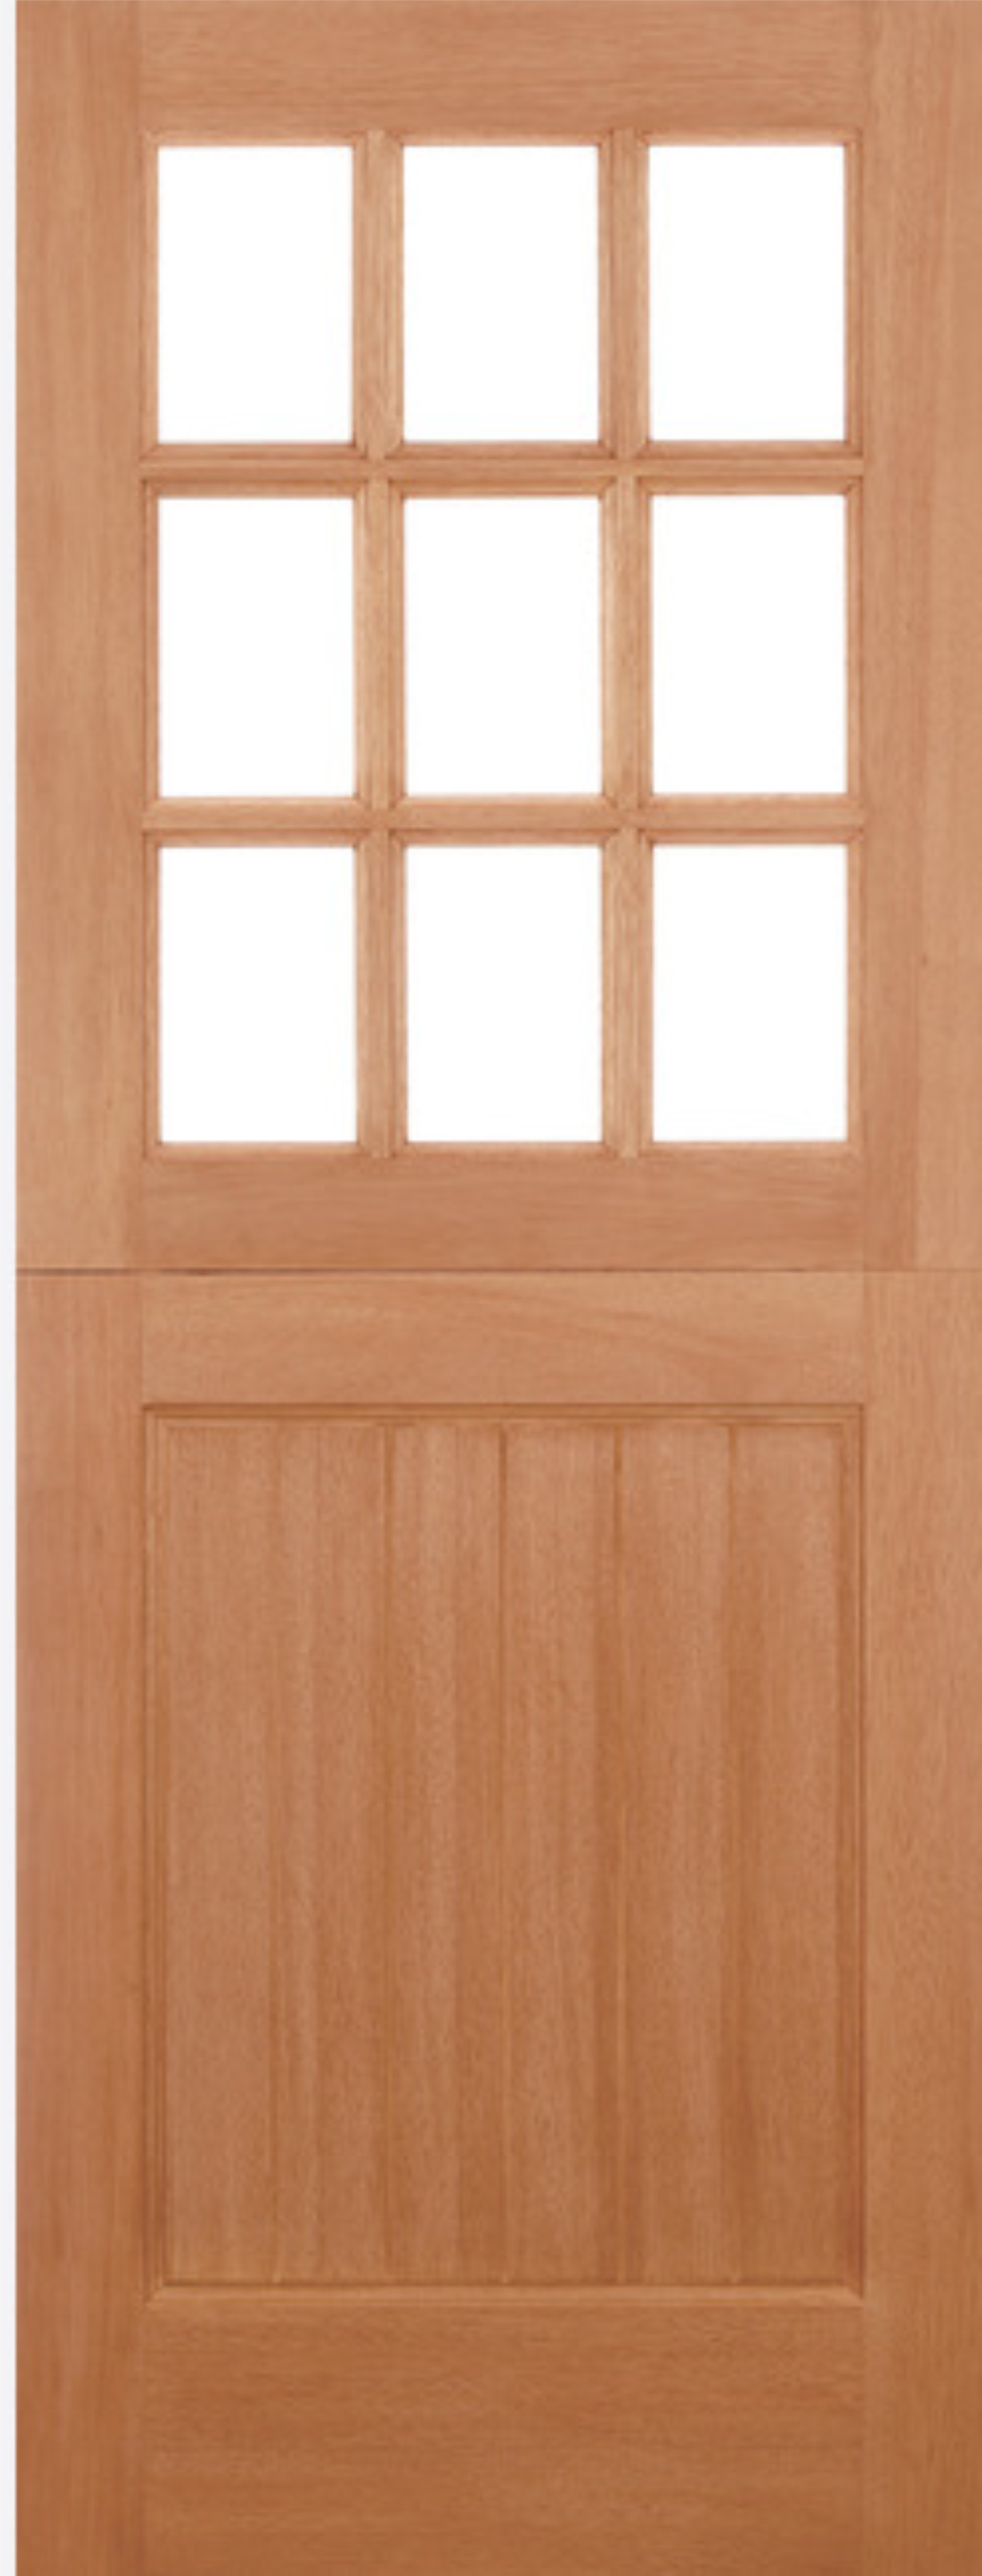 hardwood stable lpd door